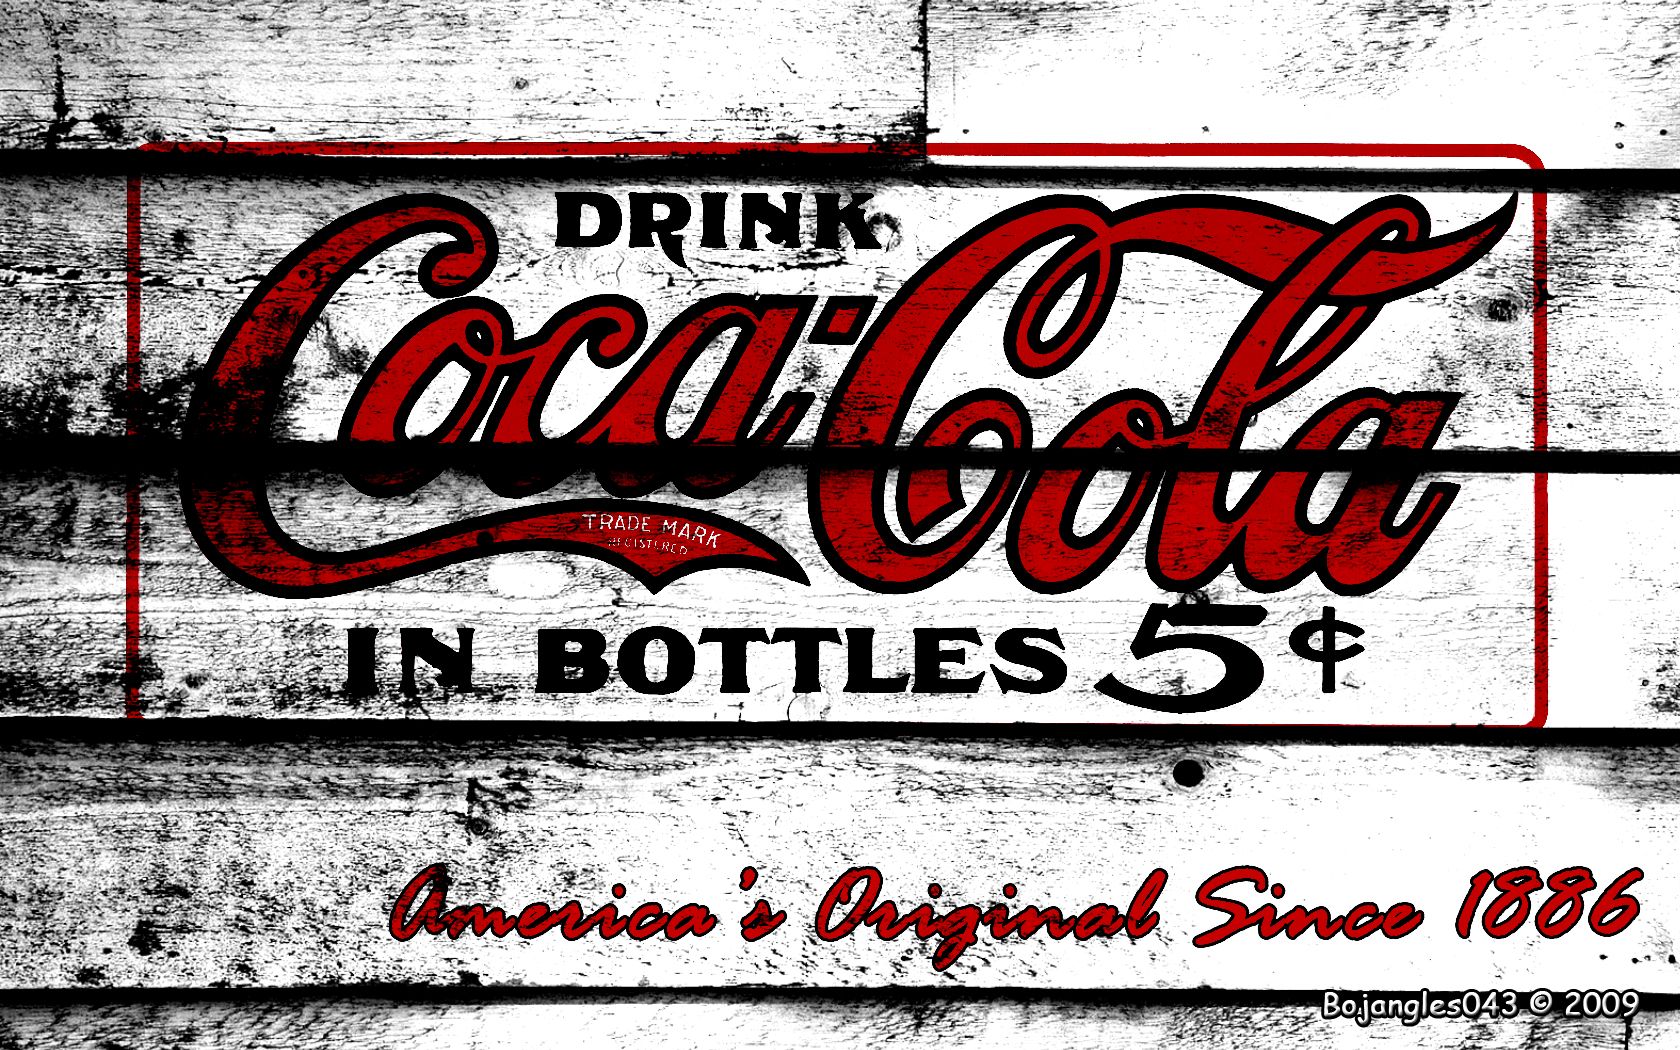 Wallpaper coca- cola free vintage